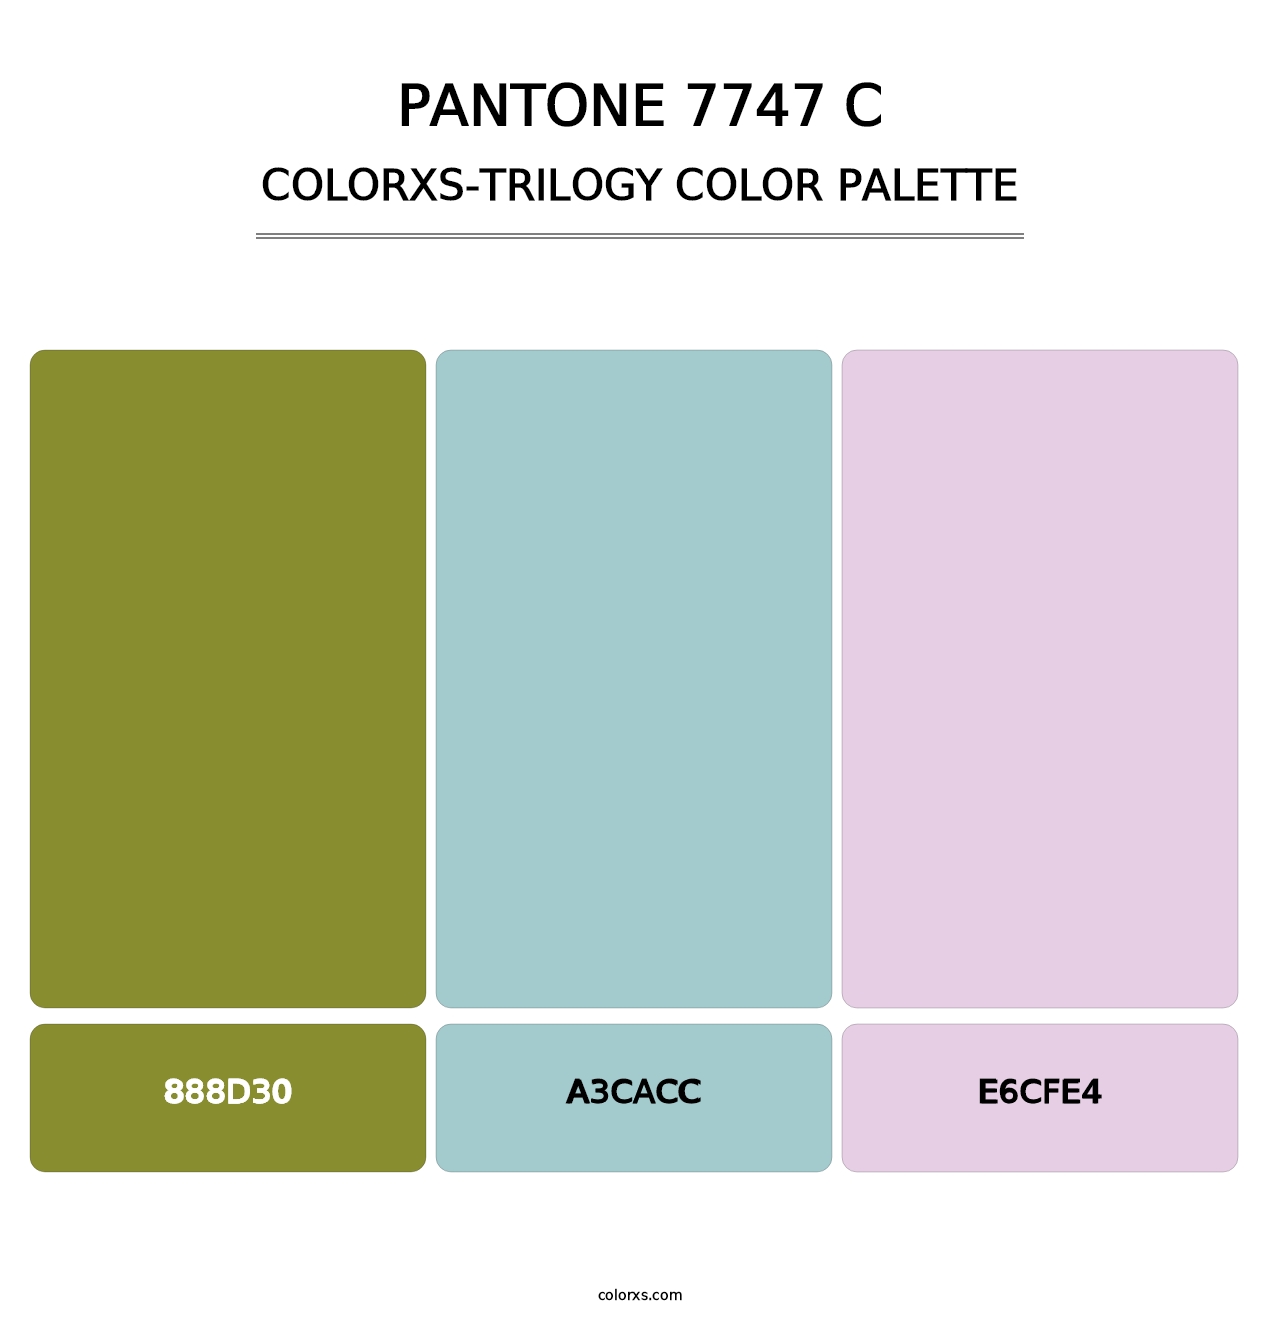 PANTONE 7747 C - Colorxs Trilogy Palette